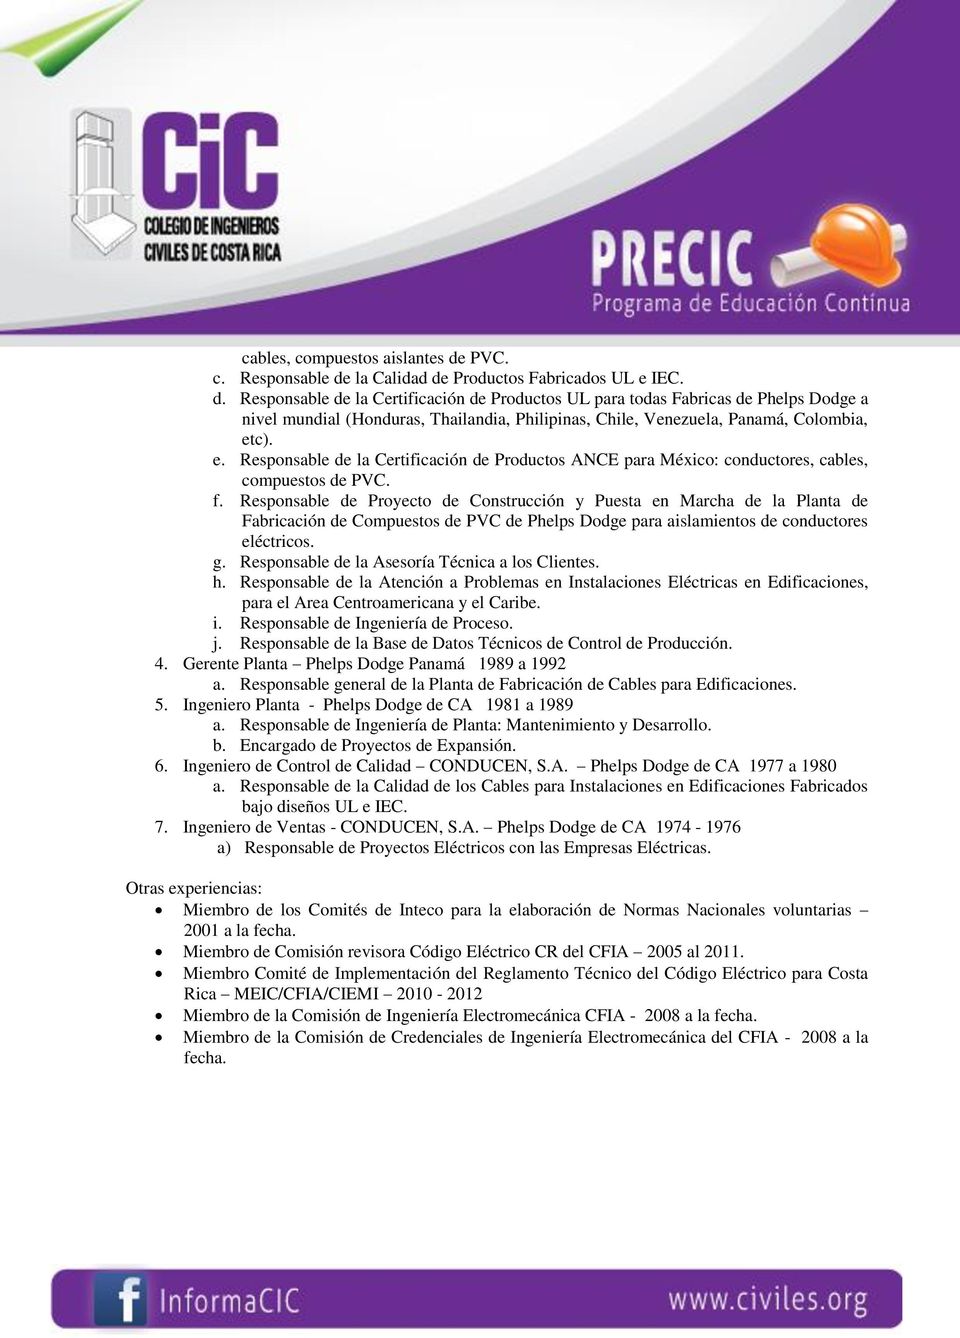 e. Responsable de la Certificación de Productos ANCE para México: conductores, cables, compuestos de PVC. f.